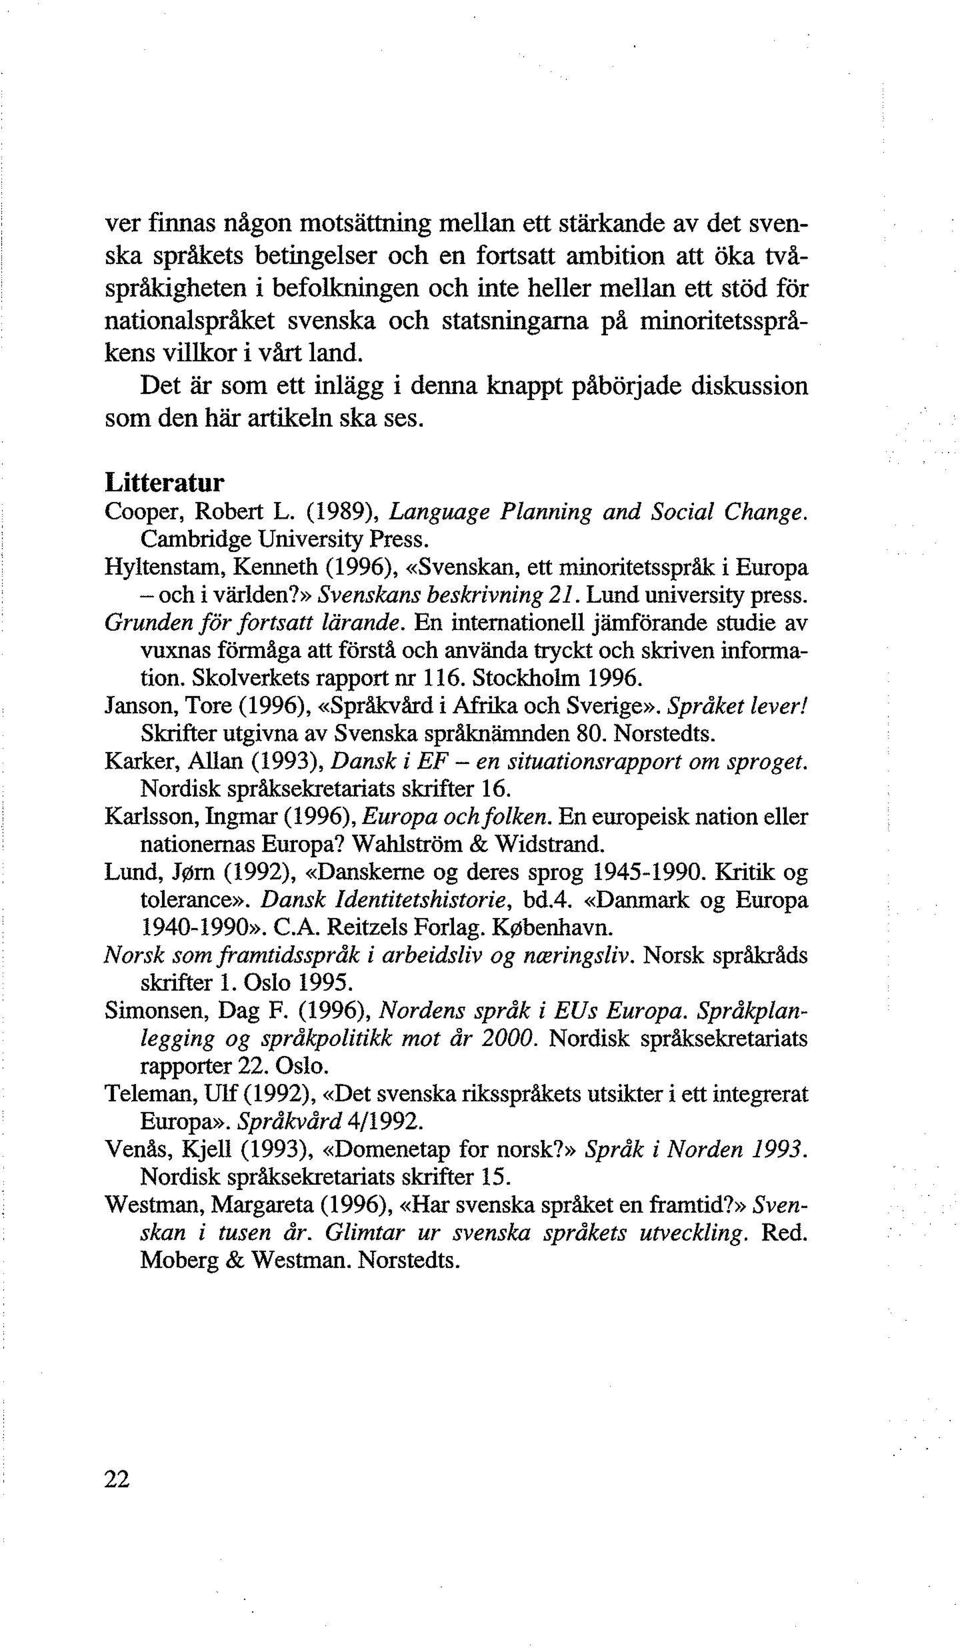 Litteratur Cooper, Robert L. (1989), Language Planning and Social Change. Cambridge University Press. Hyltenstam, Kenneth (1996), «Svenskan, ett minoritetsspråk i Europa - och i världen?